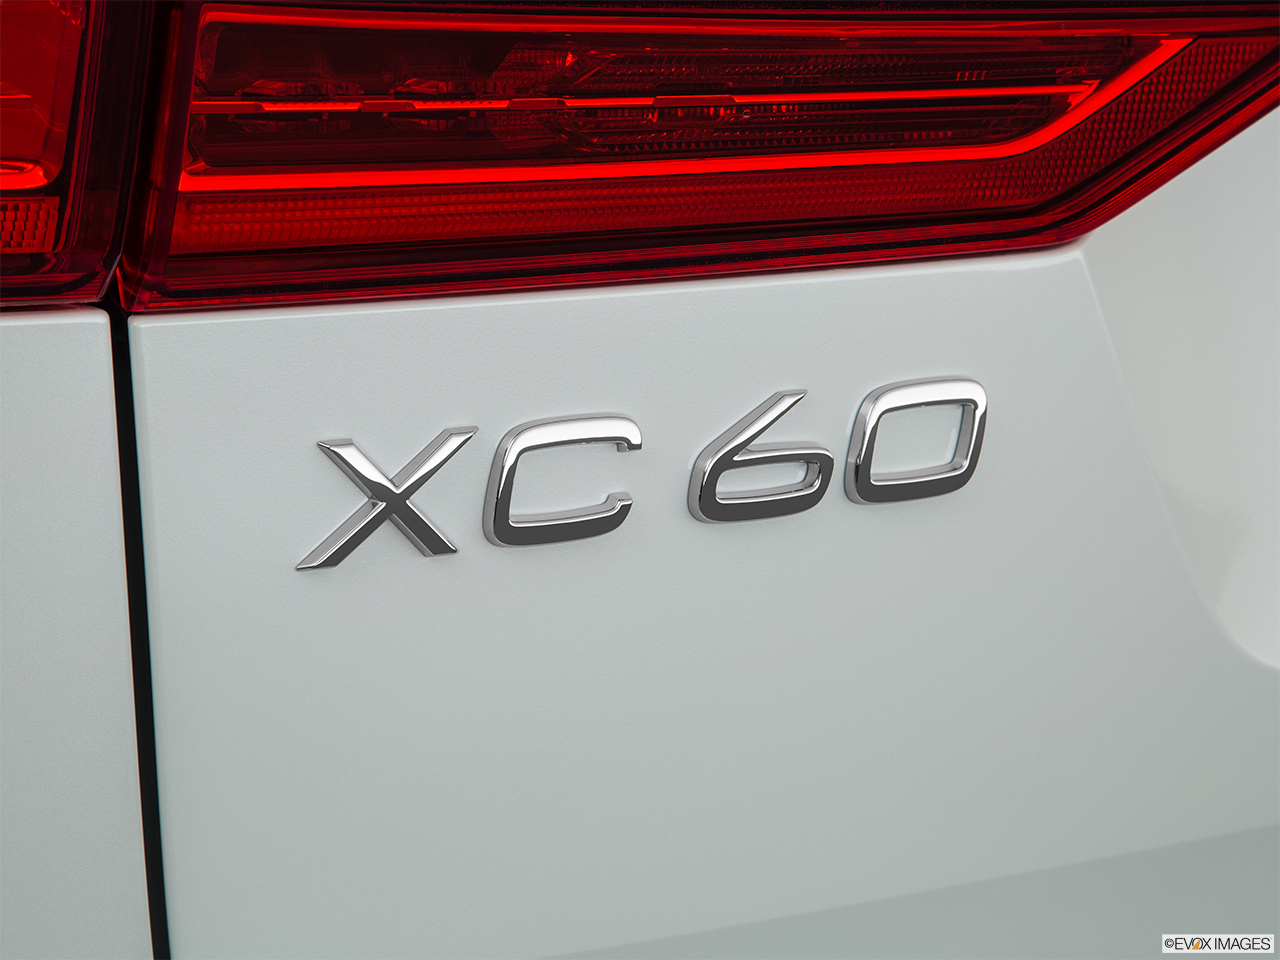 2019 Volvo XC60 T8 Inscription eAWD Plug-in Hybrid Rear model badge/emblem 